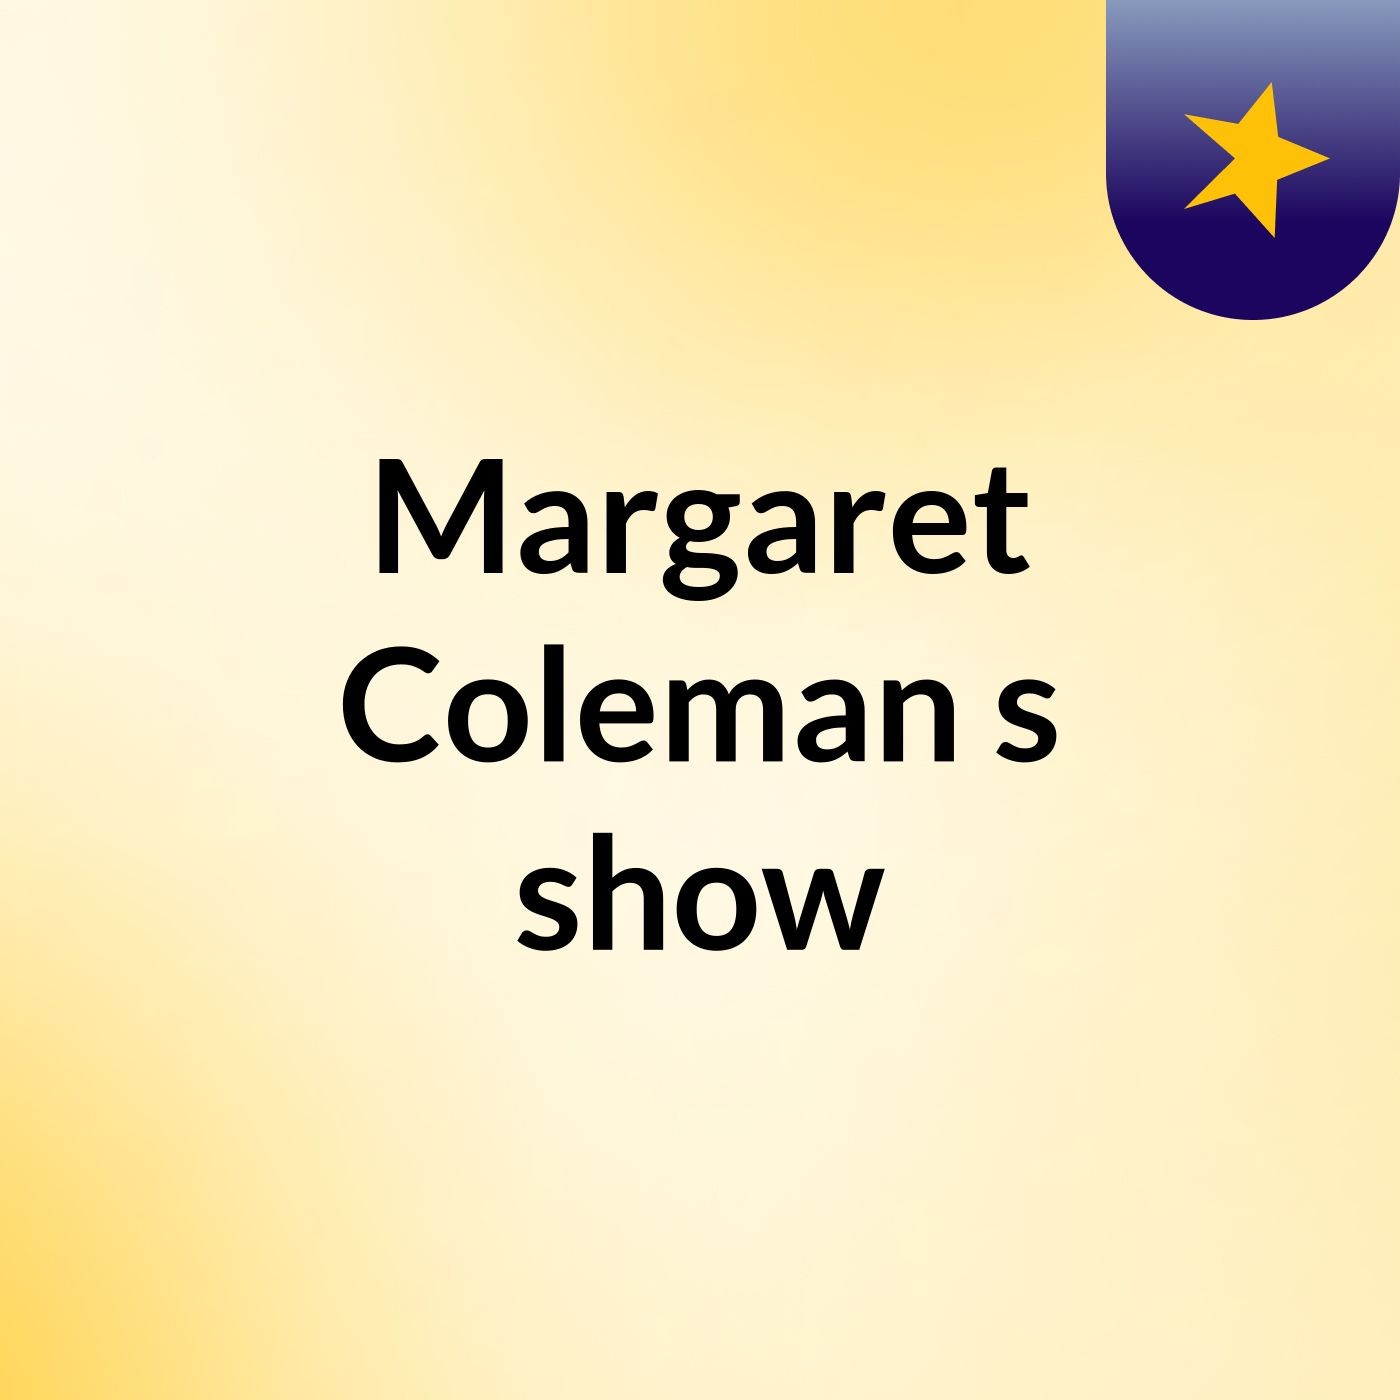 Margaret Coleman's show